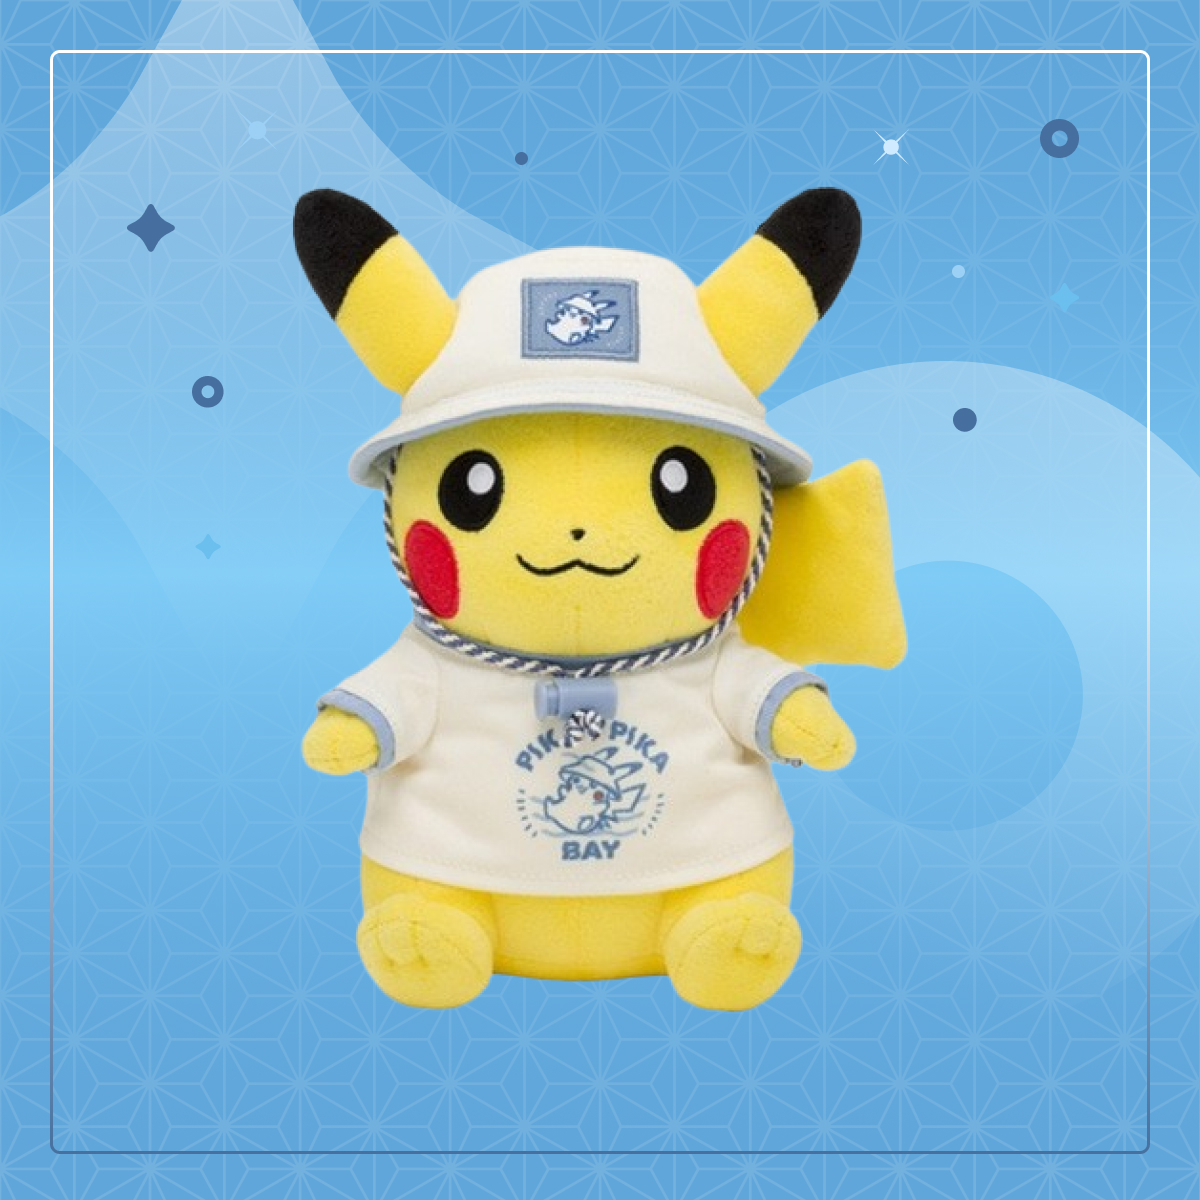 Alerte kawaii ! Une nouvelle peluche Pikachu est disponible ⚡ Avec son petit t-shirt Tokyo Bay et son chapeau d'été, elle est parfaite pour tous les fans de Pikachu et collectionneurs de peluches ! 🤩 #PokemonCenter #Pikachu  C'est par ici ⬇️ i.mtr.cool/klqjmnmokk